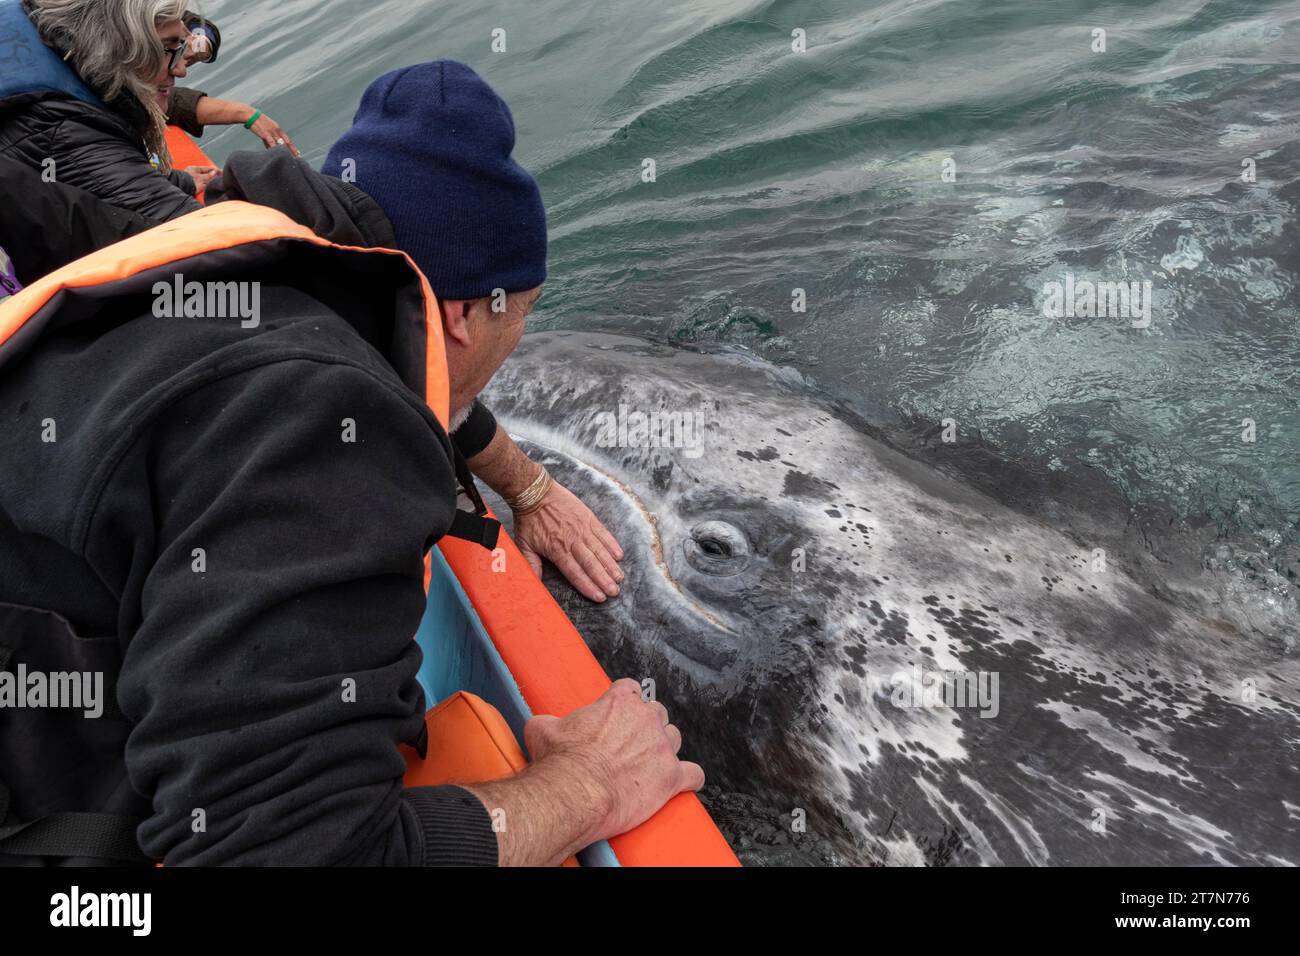 Accarezzare una balena grigia a Laguna San Ignacio, Baja California Sur, Messico Foto Stock